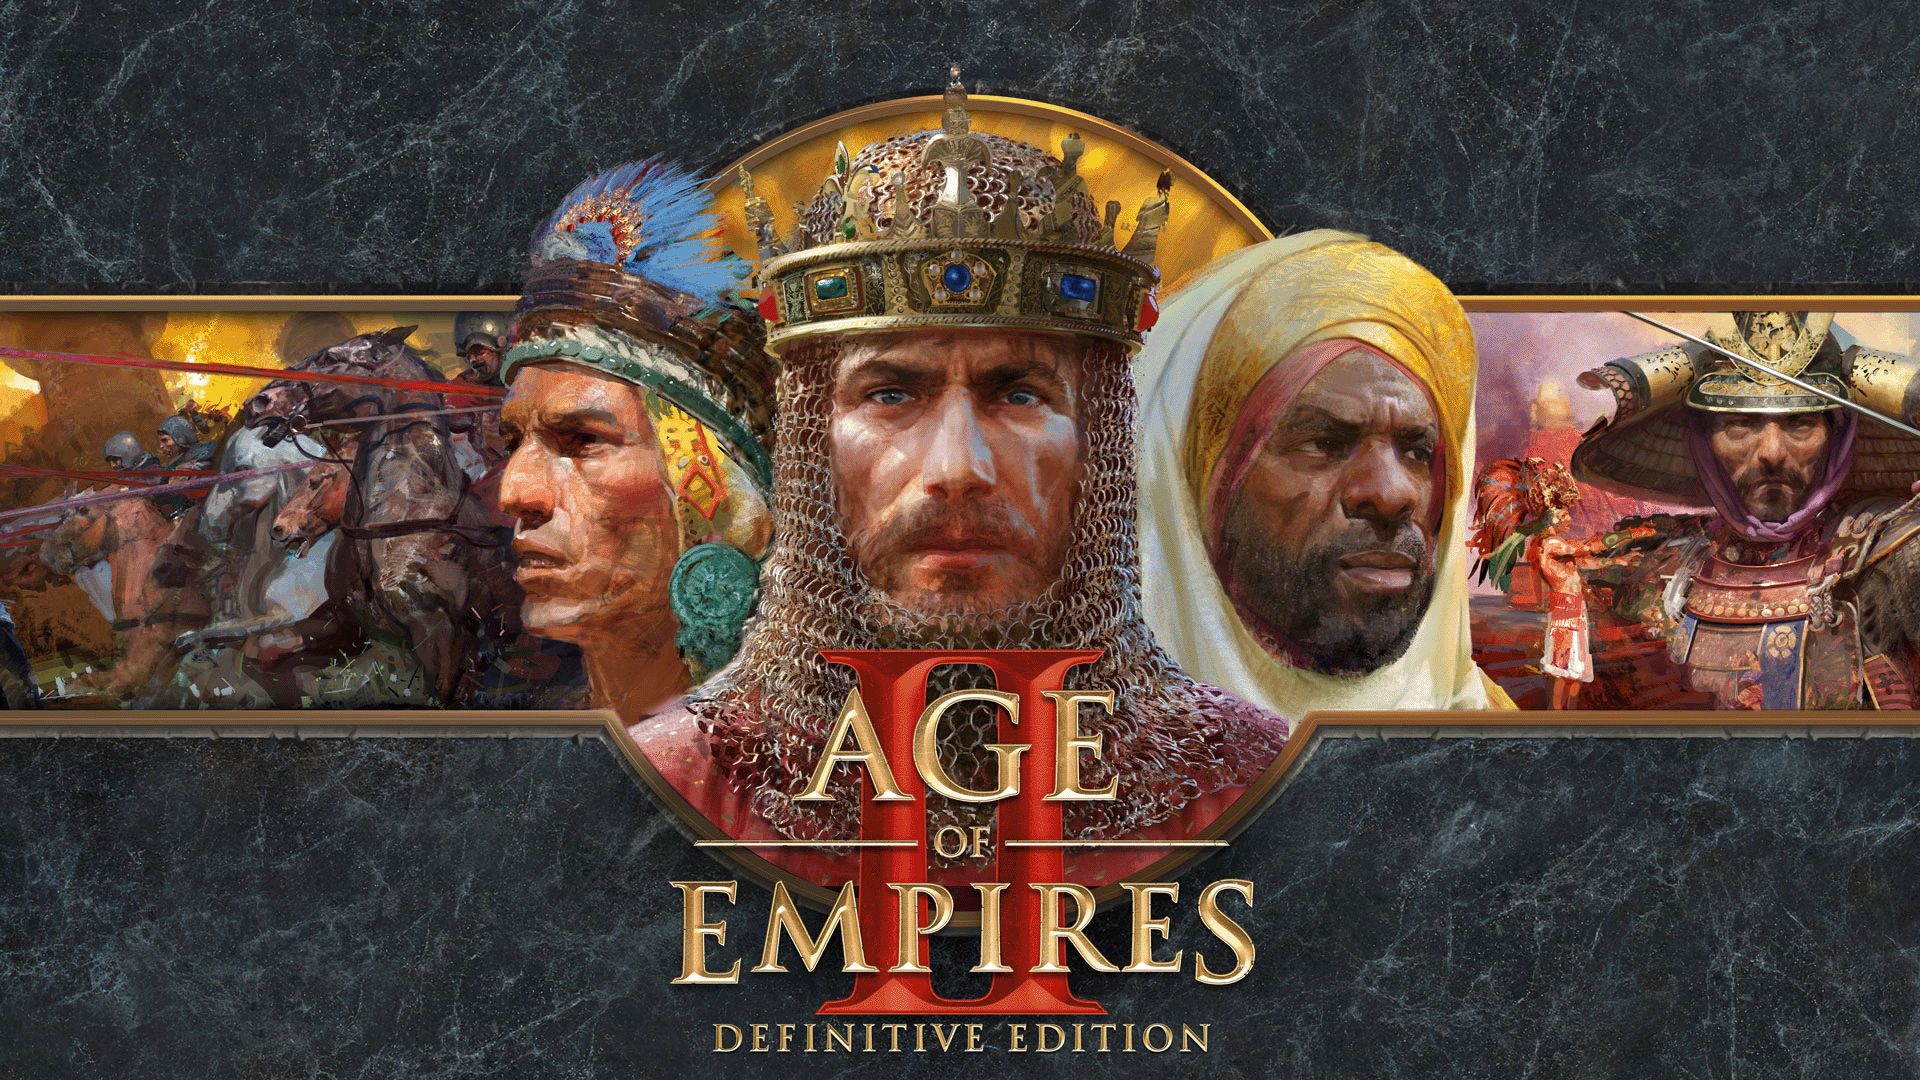 Age of Empires II: Definitive Edition est désormais disponible sur console, avec des contrôles optimisés et de nouveaux tutoriels